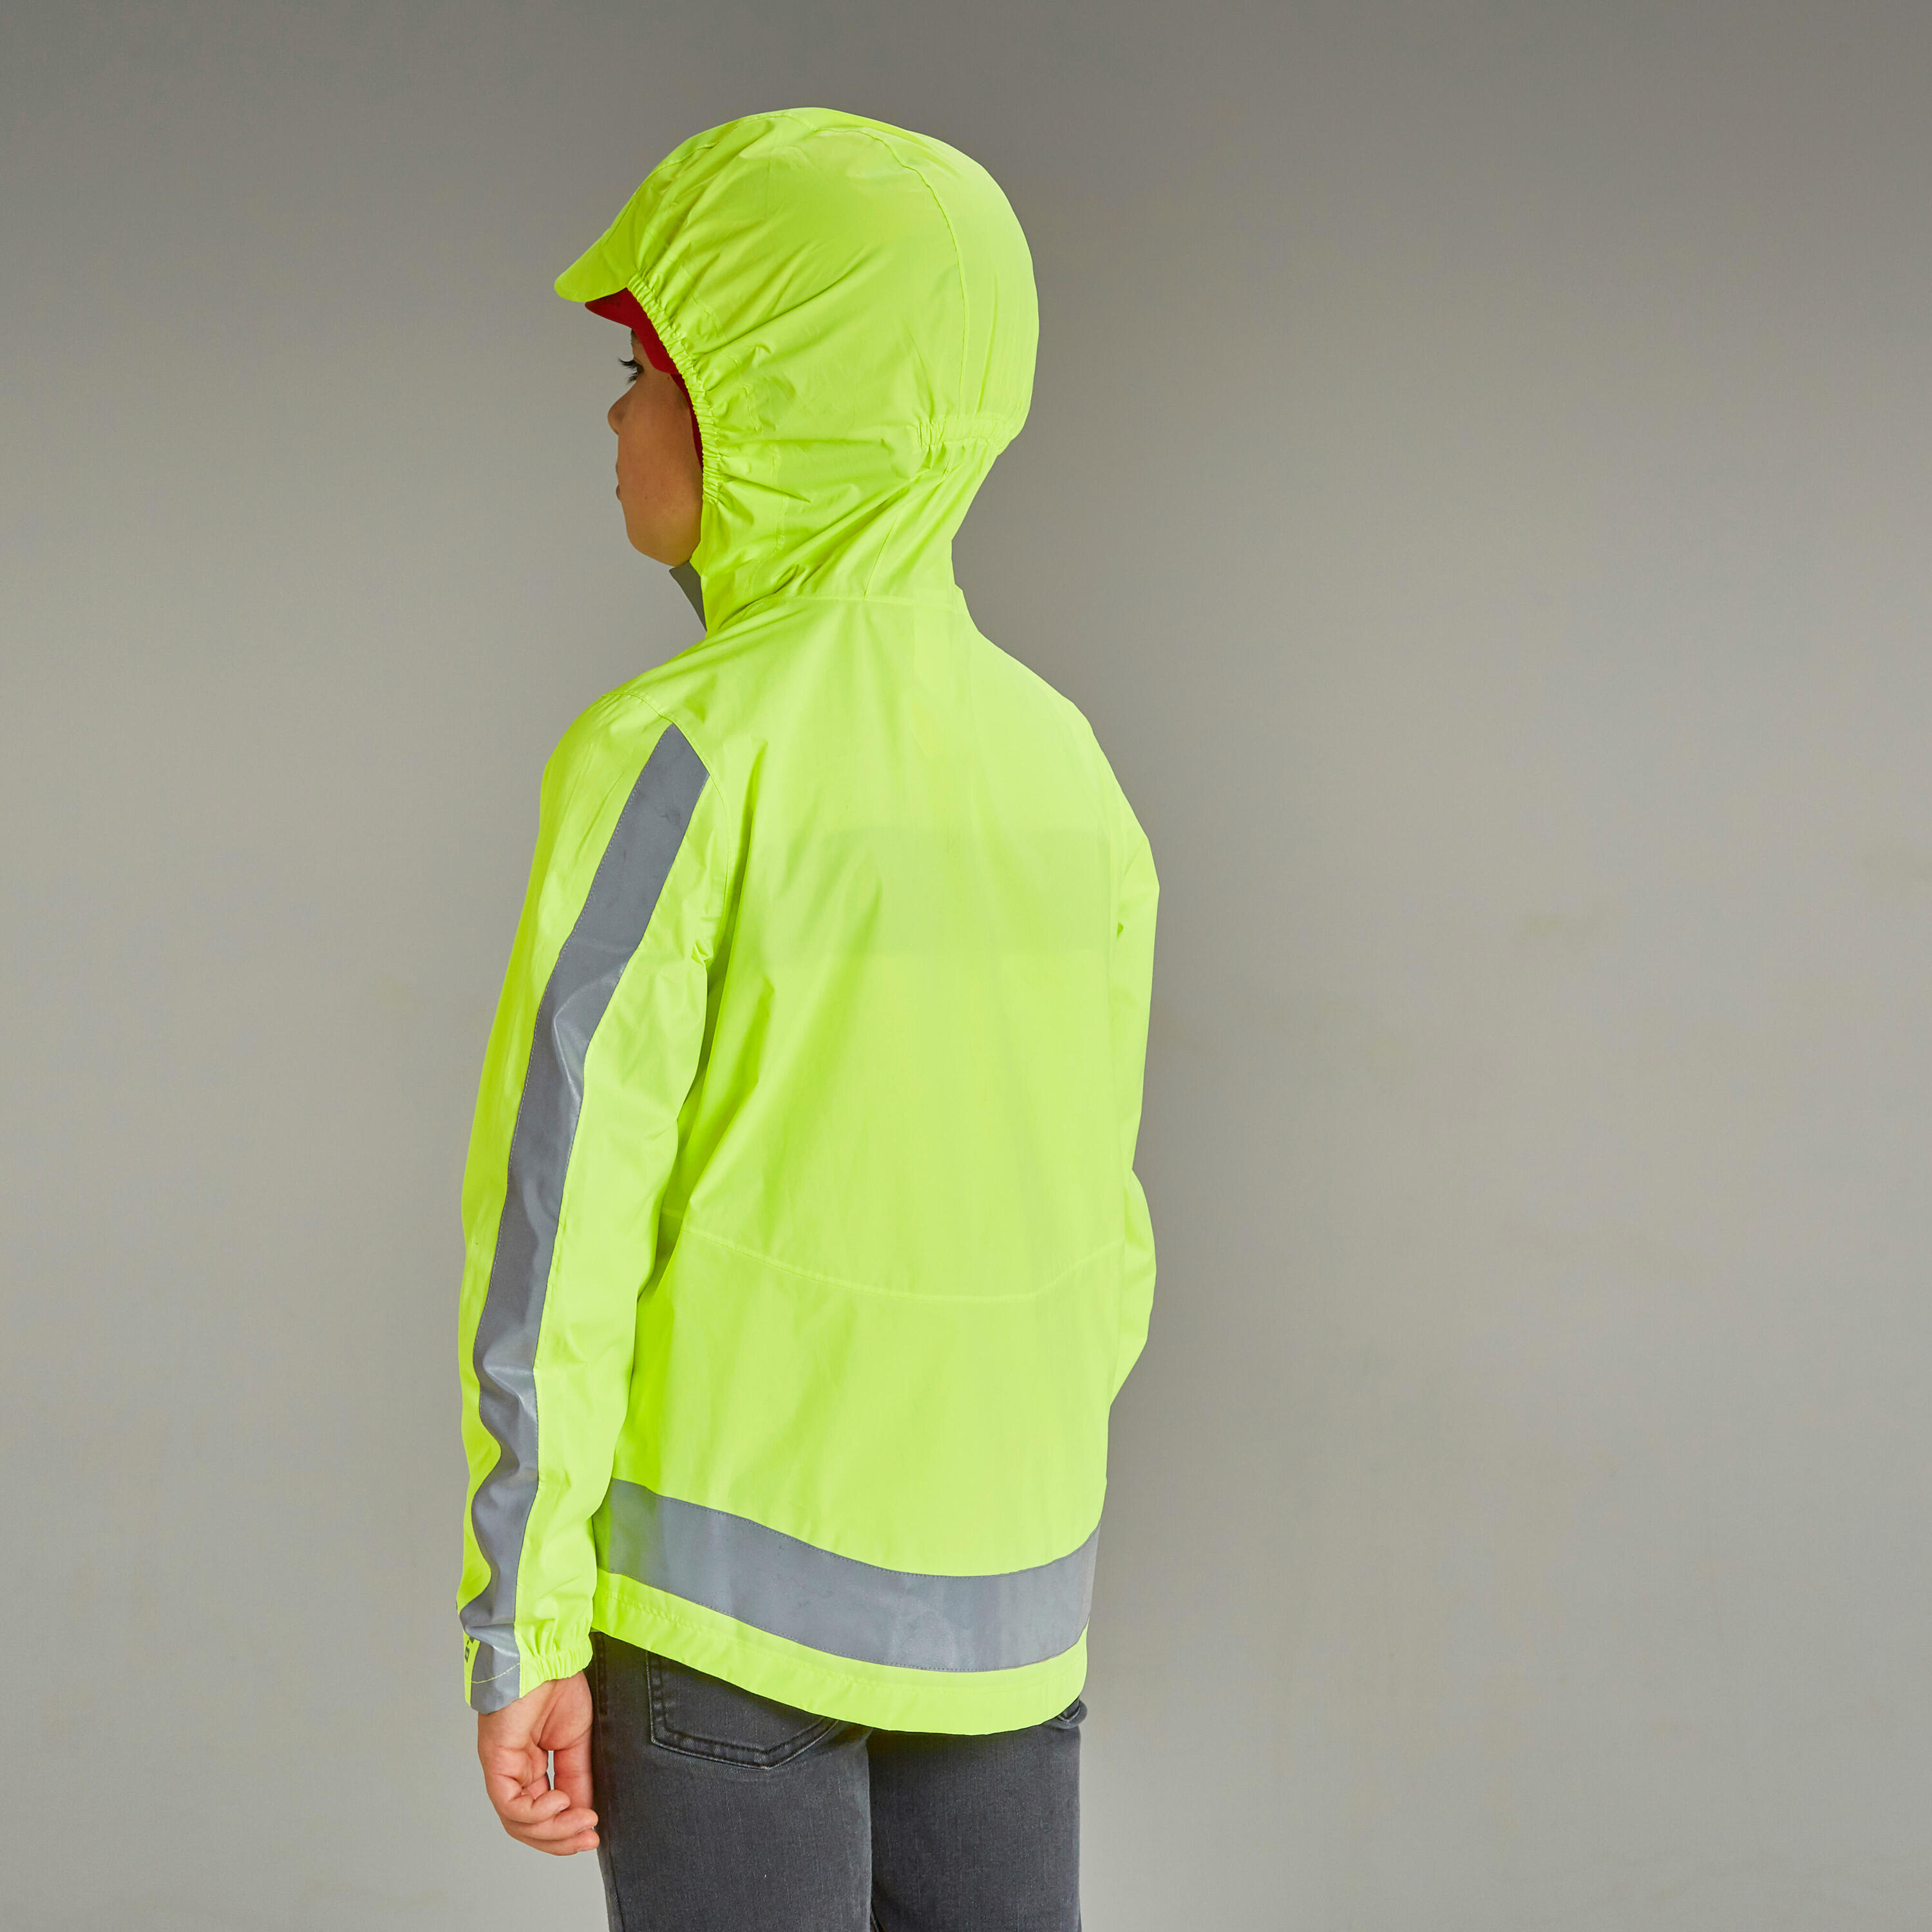 500 Kids' Waterproof Hi-Vis Cycling Jacket - Yellow 4/11